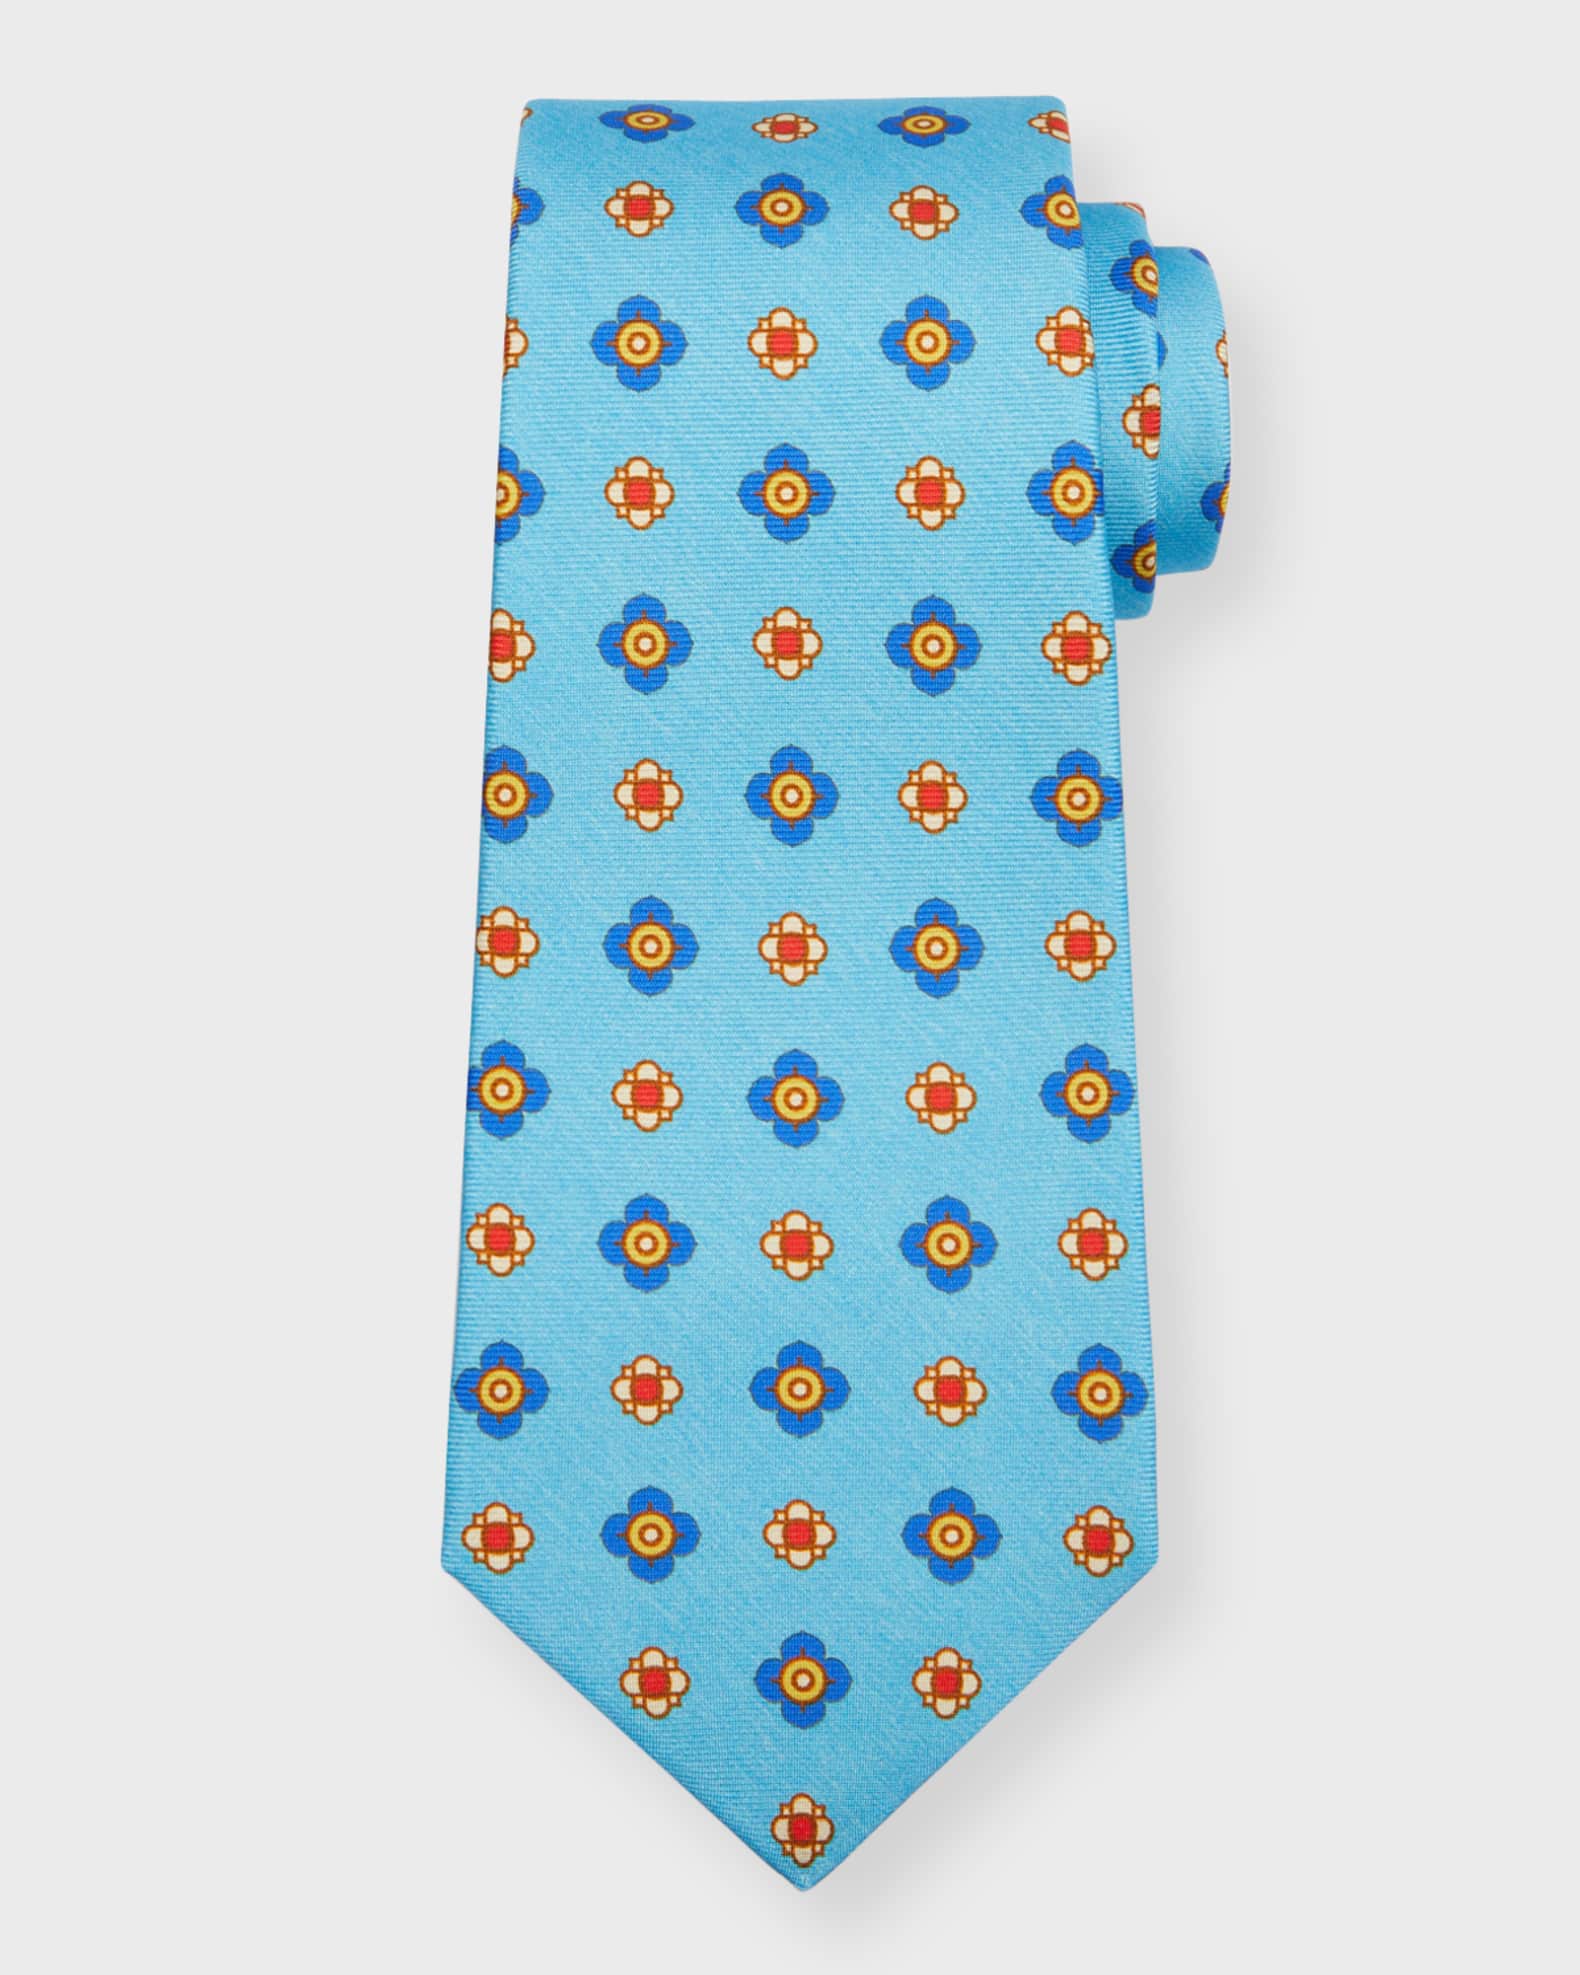 Buy LOUIS STITCH Mens Arrow Grey Italian Silk Necktie Set With